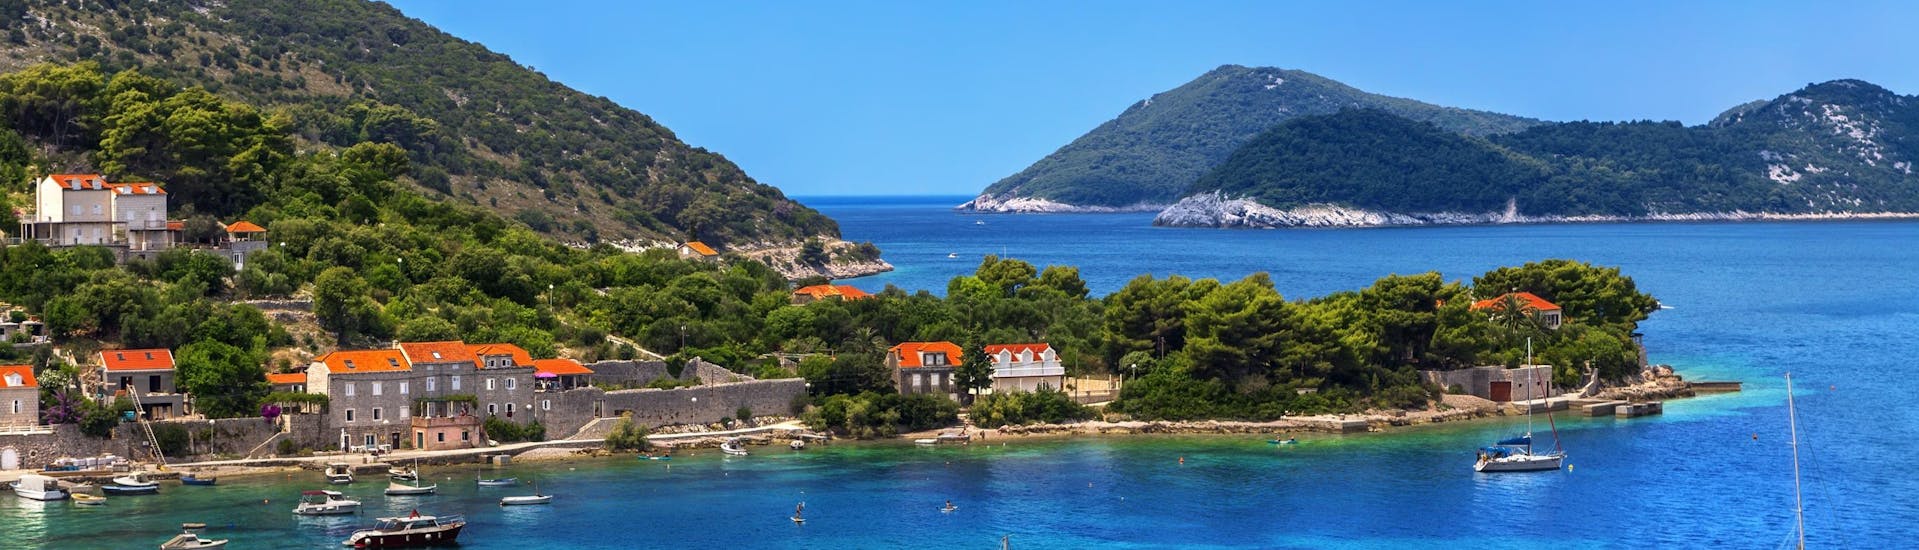 Photo de l'île de Kolocep, qui fait partie des îles Elaphiti près de la côte de Dubrovnik, une destination populaire pour les excursions en bateau.